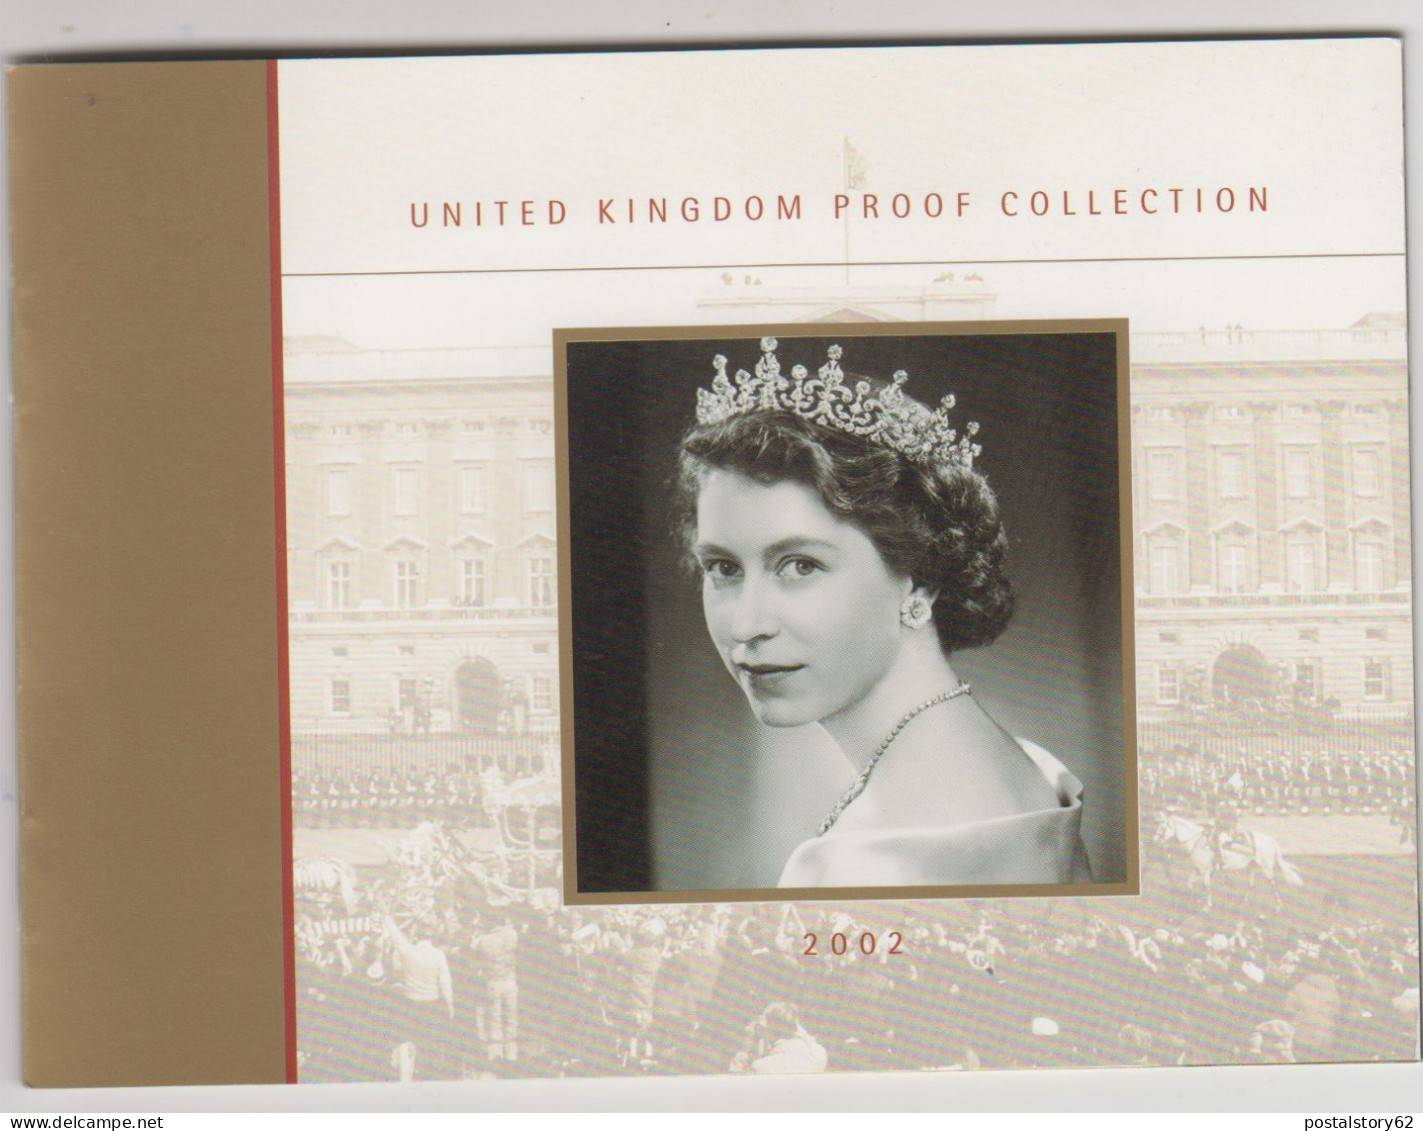 Gran Bretagna, United Kingdom Proof Collection - Serie Completa Ufficiale In Confezione Integra 2002 - Maundy Sets & Commemorative